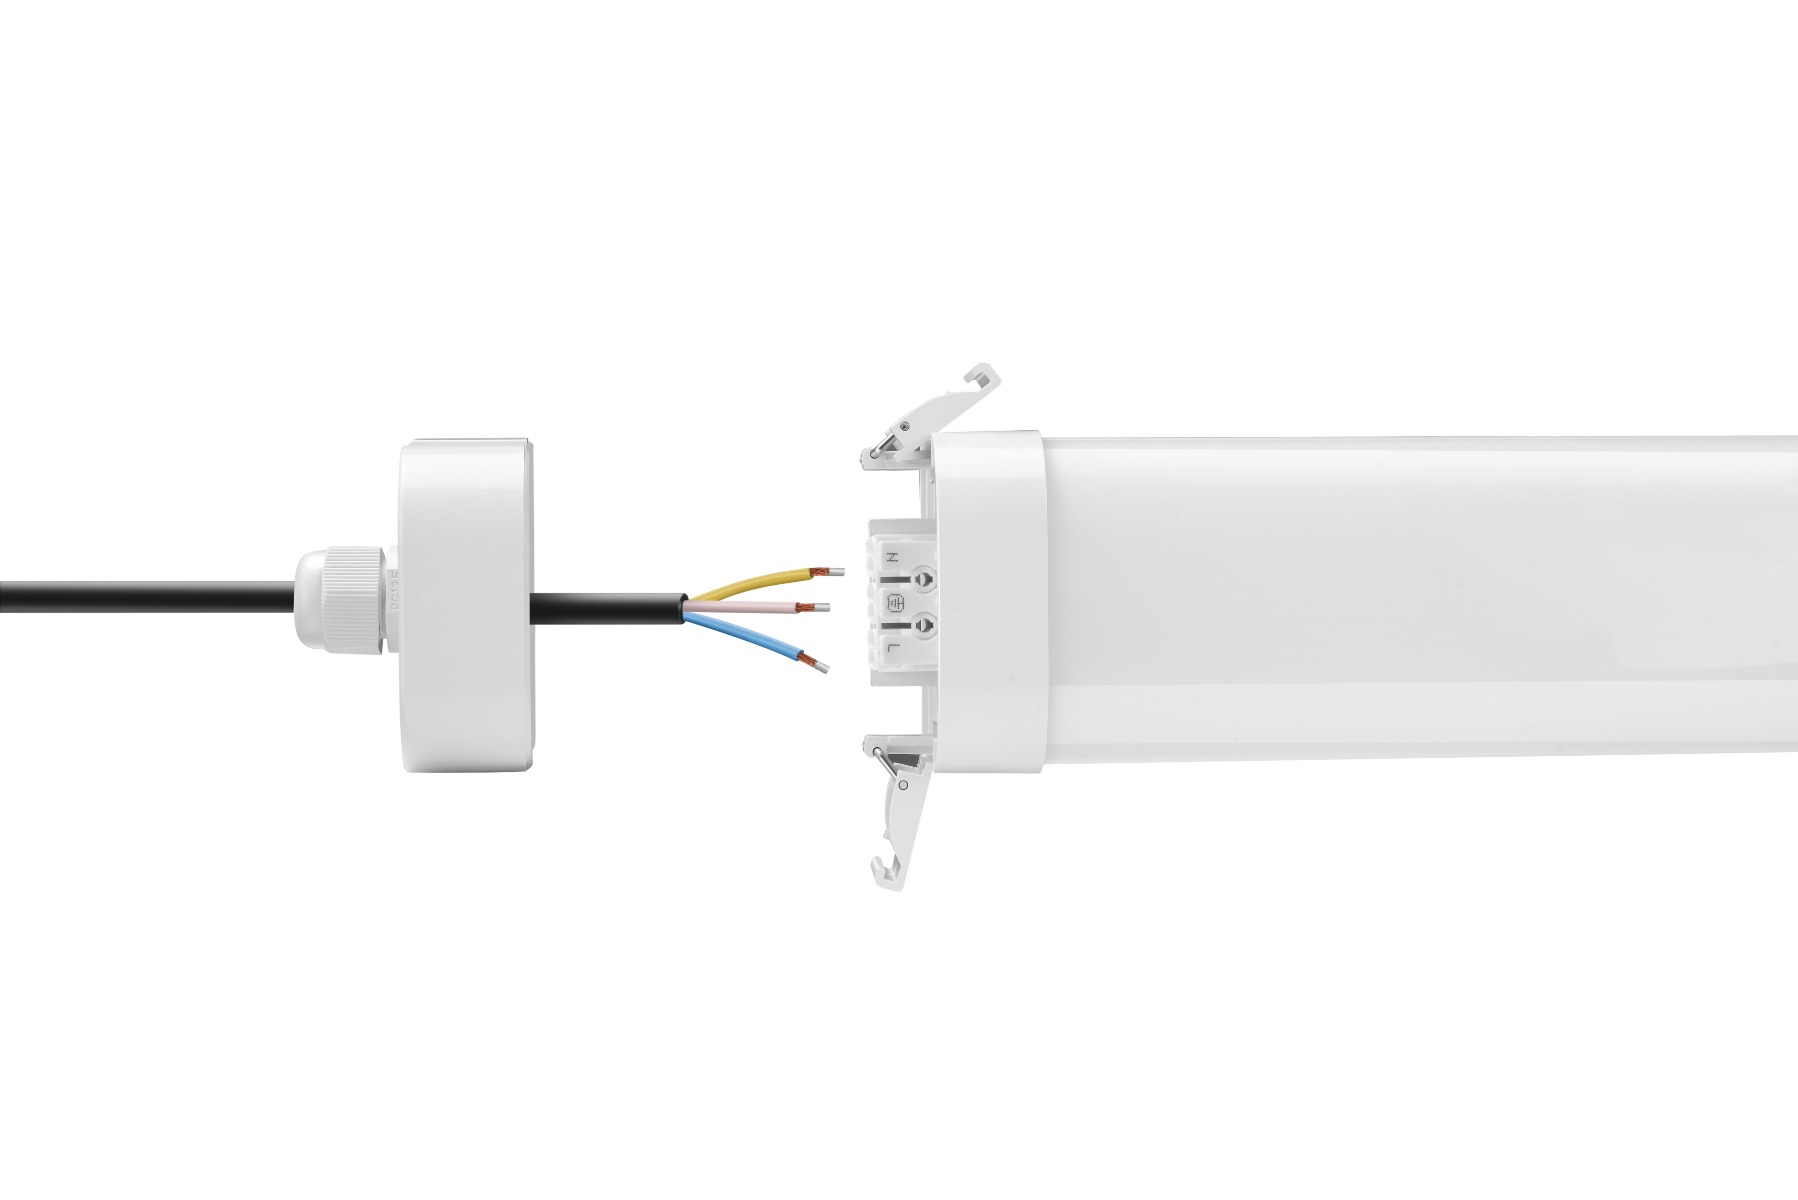 LED vapor tight fixture 60W 150cm 100L /W IP65 (2 connection points)